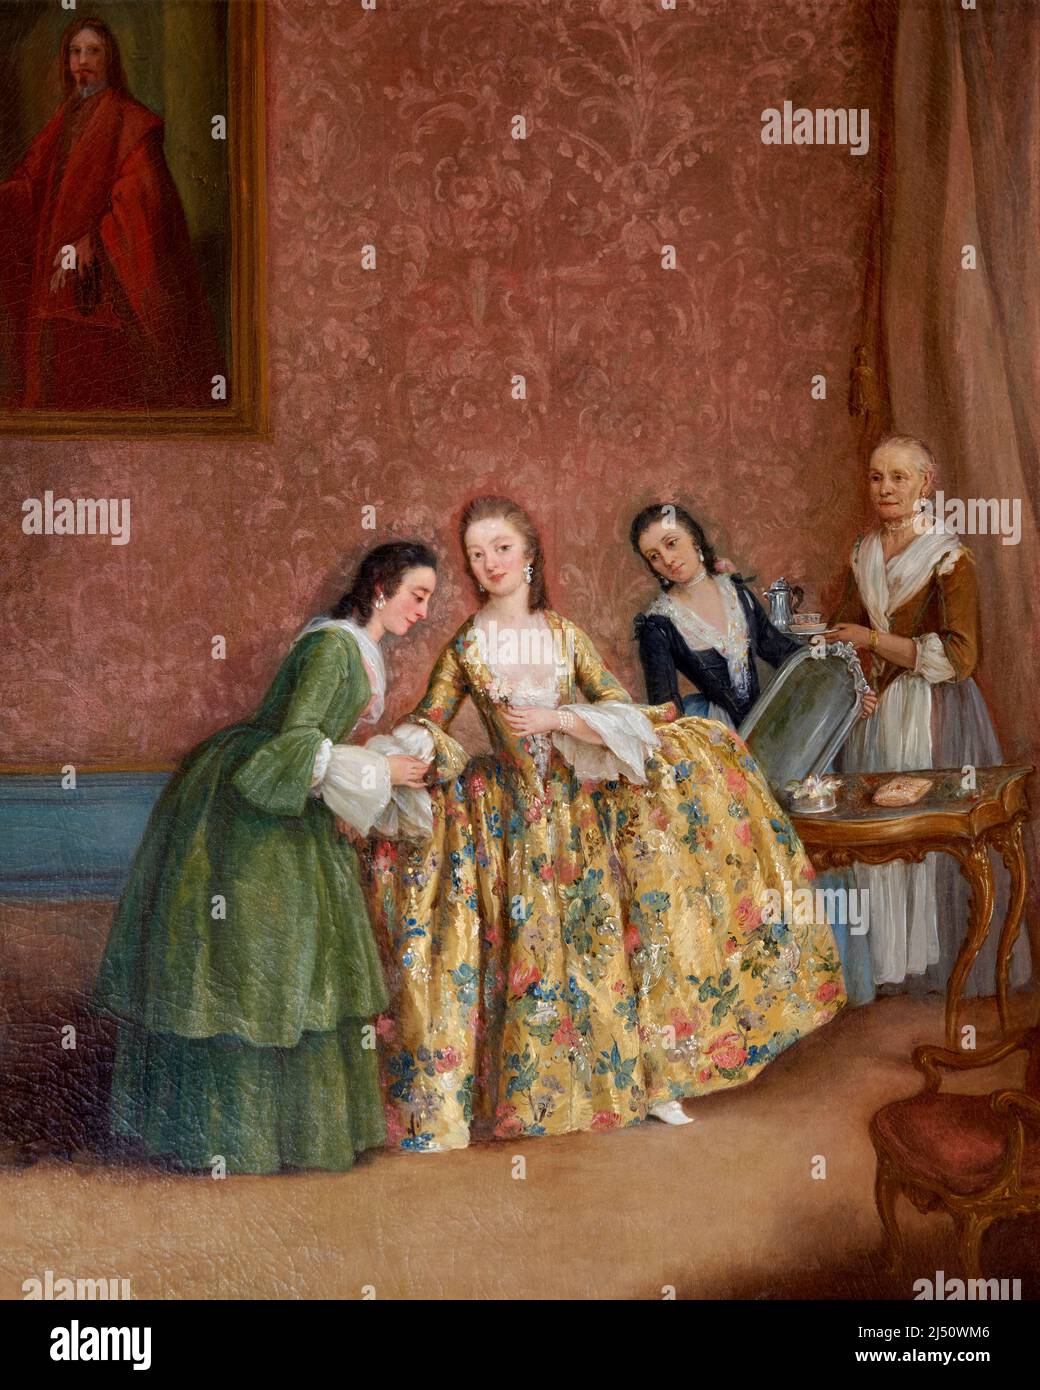 La toilette della dama - olio su tela - Pietro Longhi  - 1741 - Venezia, Gallerie dell’ Accademia Stock Photo